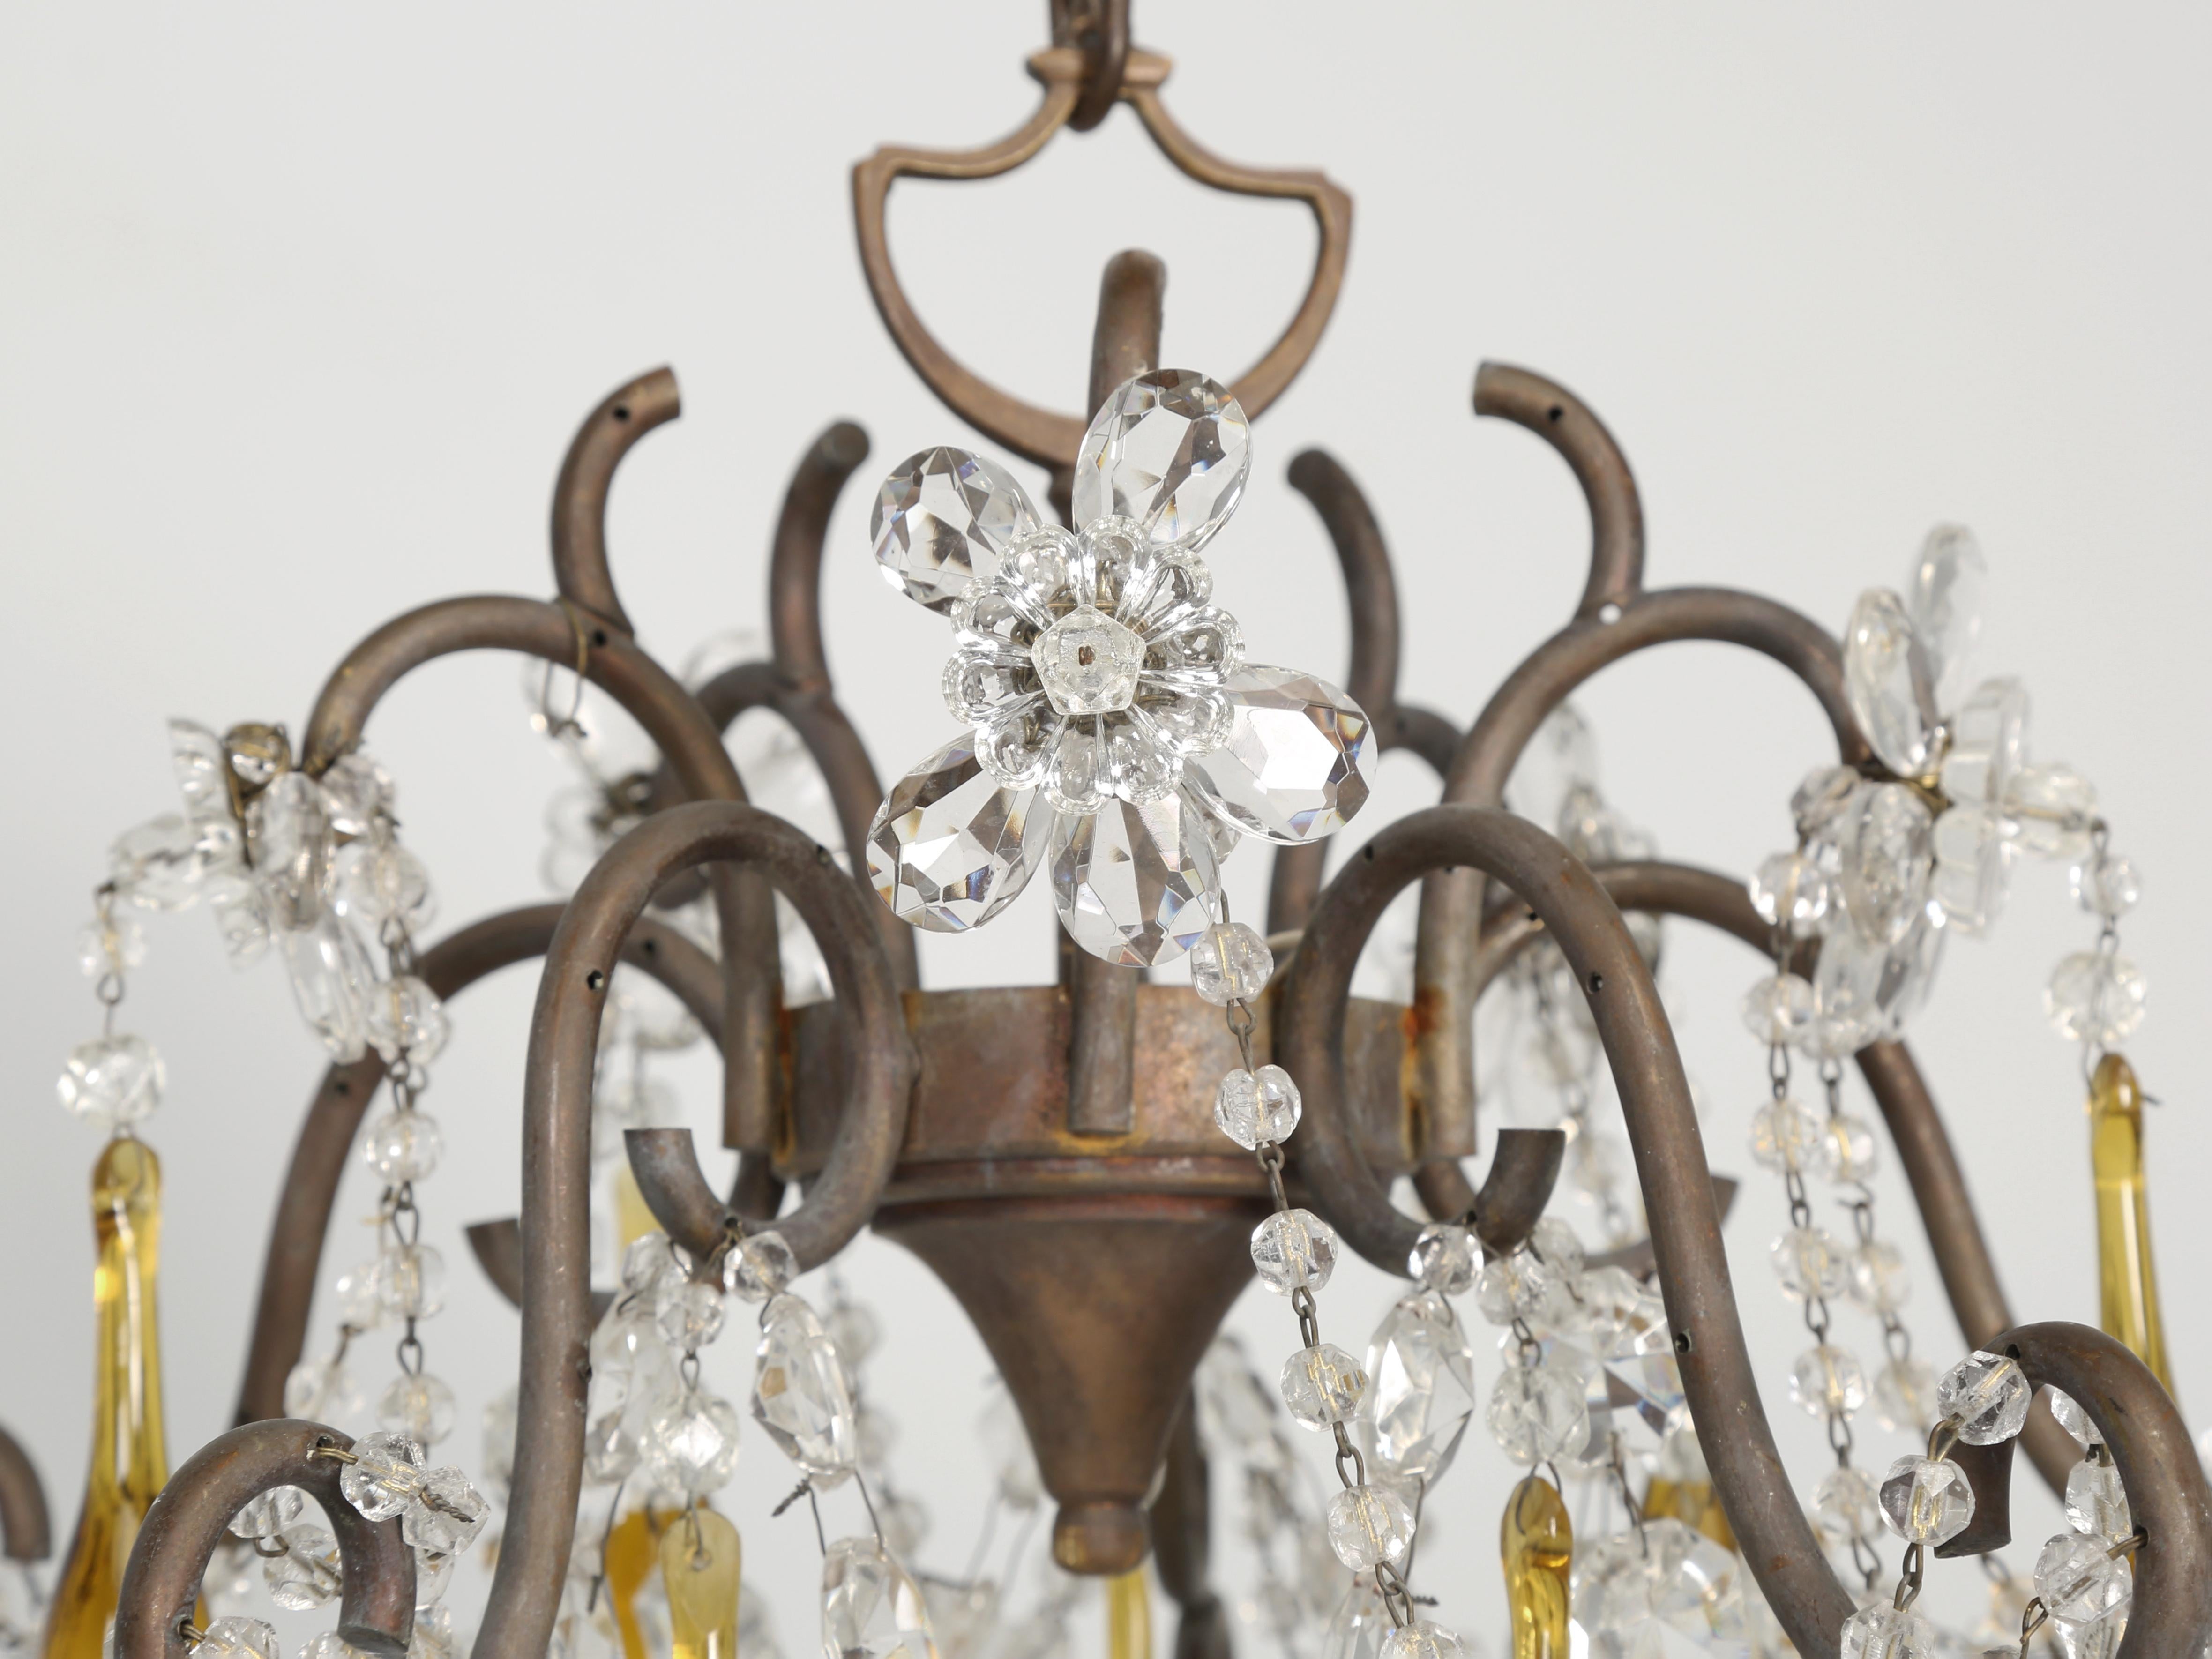 Italienischer Vintage-Kronleuchter mit bernsteinfarbenen Kristalltropfen, geschliffenen Glasblumen und Perlenketten. Der Kronleuchter wurde getestet und funktioniert einwandfrei. Keine früheren Reparaturen, die wir sehen können, und schauen Sie